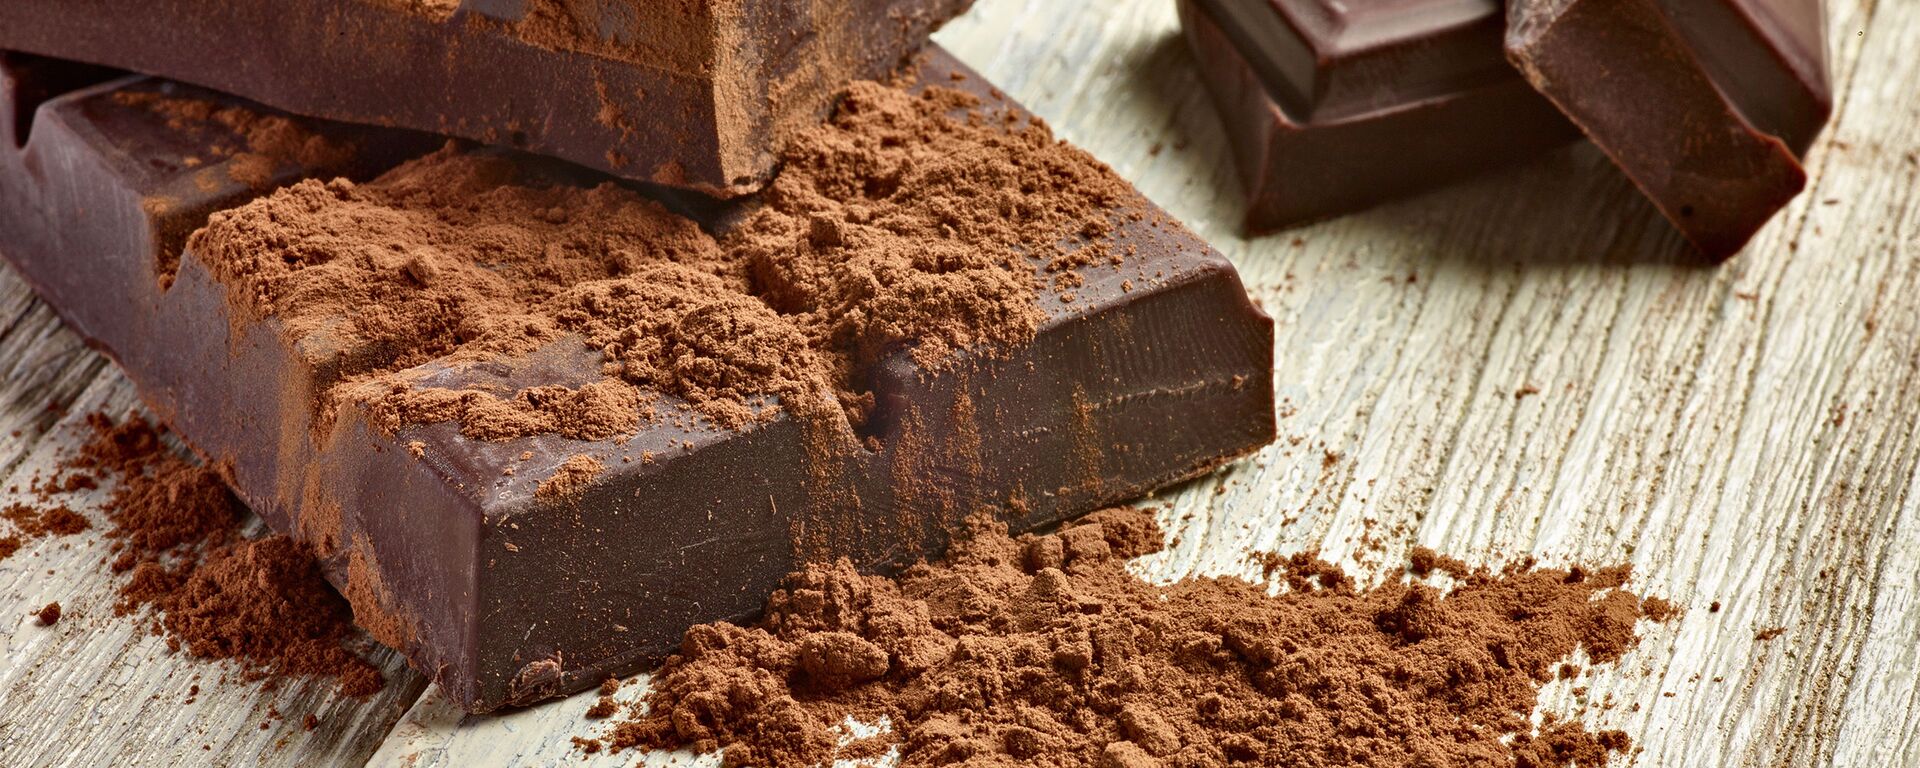 اگر هر روز شکلات بخورید، چه اتفاقی در بدن شما می افتد  - اسپوتنیک ایران  , 1920, 13.05.2021